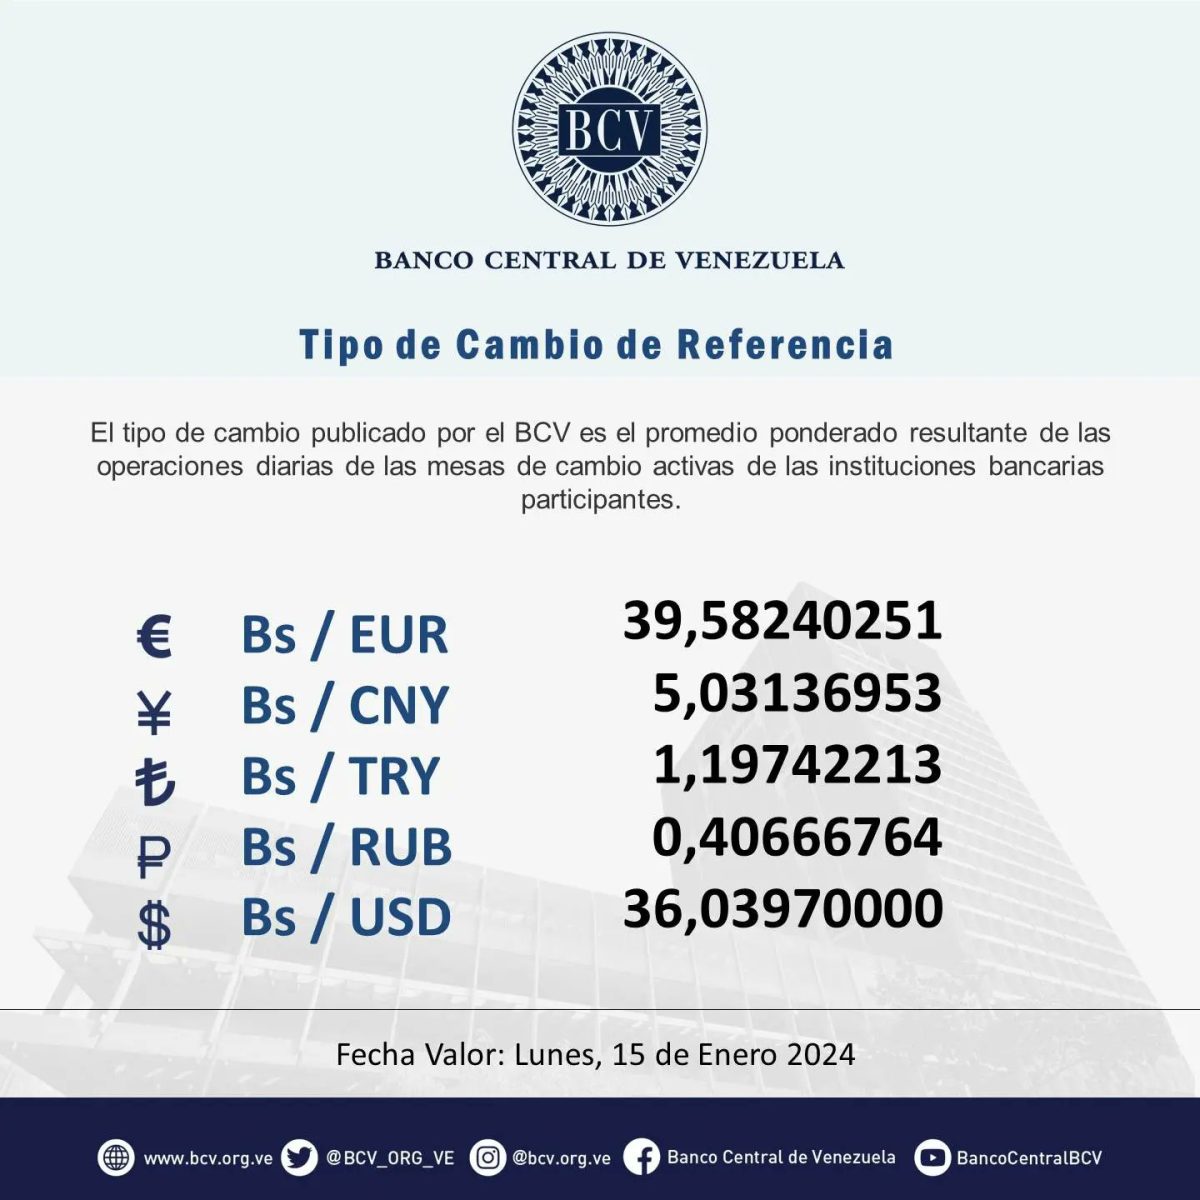 dolartoday en venezuela precio del dolar este domingo 14 de enero de 2024 laverdaddemonagas.com bcv232